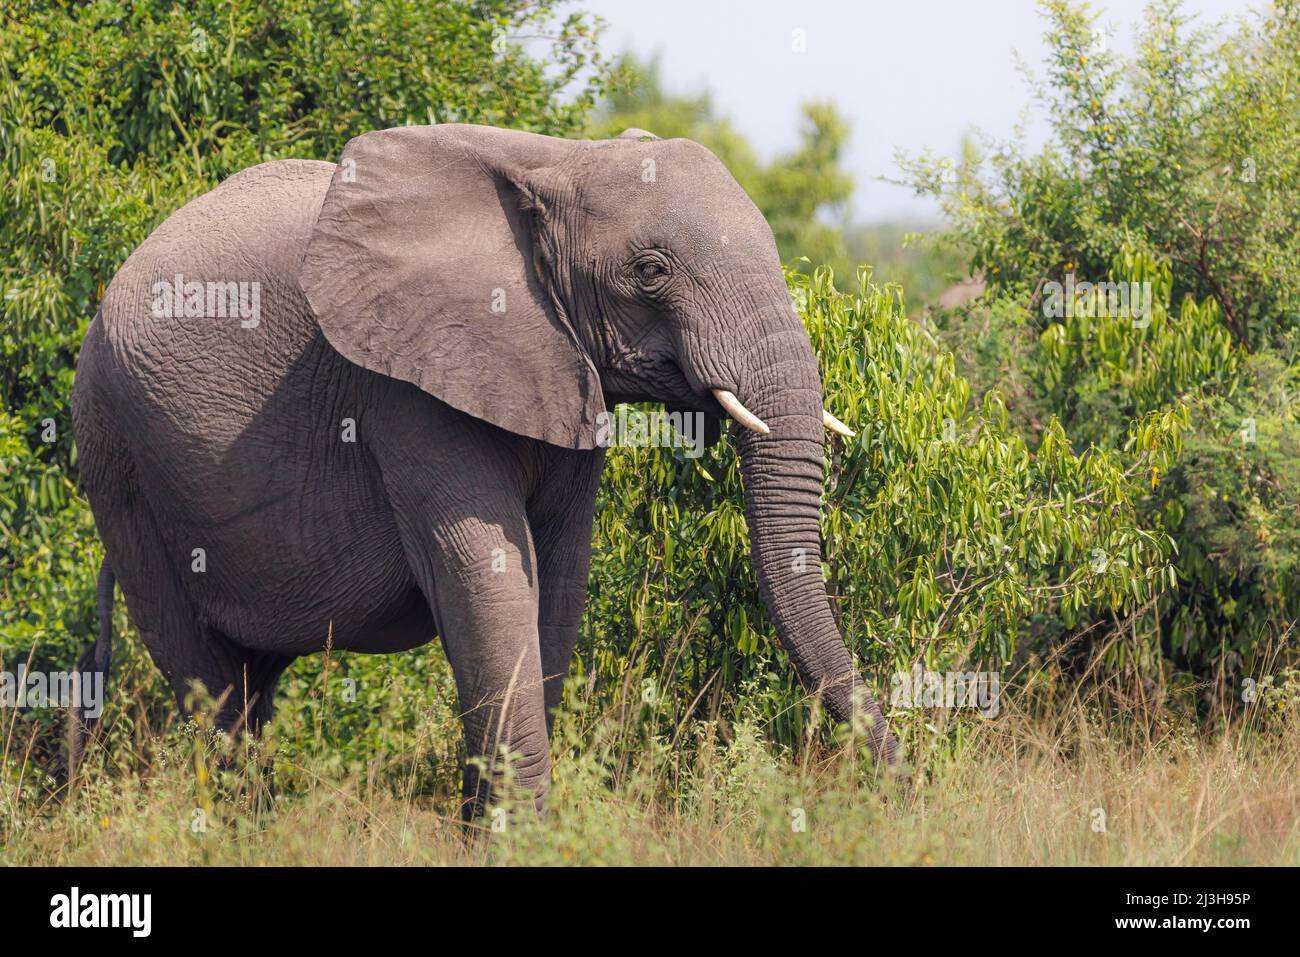 Uganda, Rubirizi district, Katunguru, Queen Elizabeth National Park, savannah elephant Stock Photo